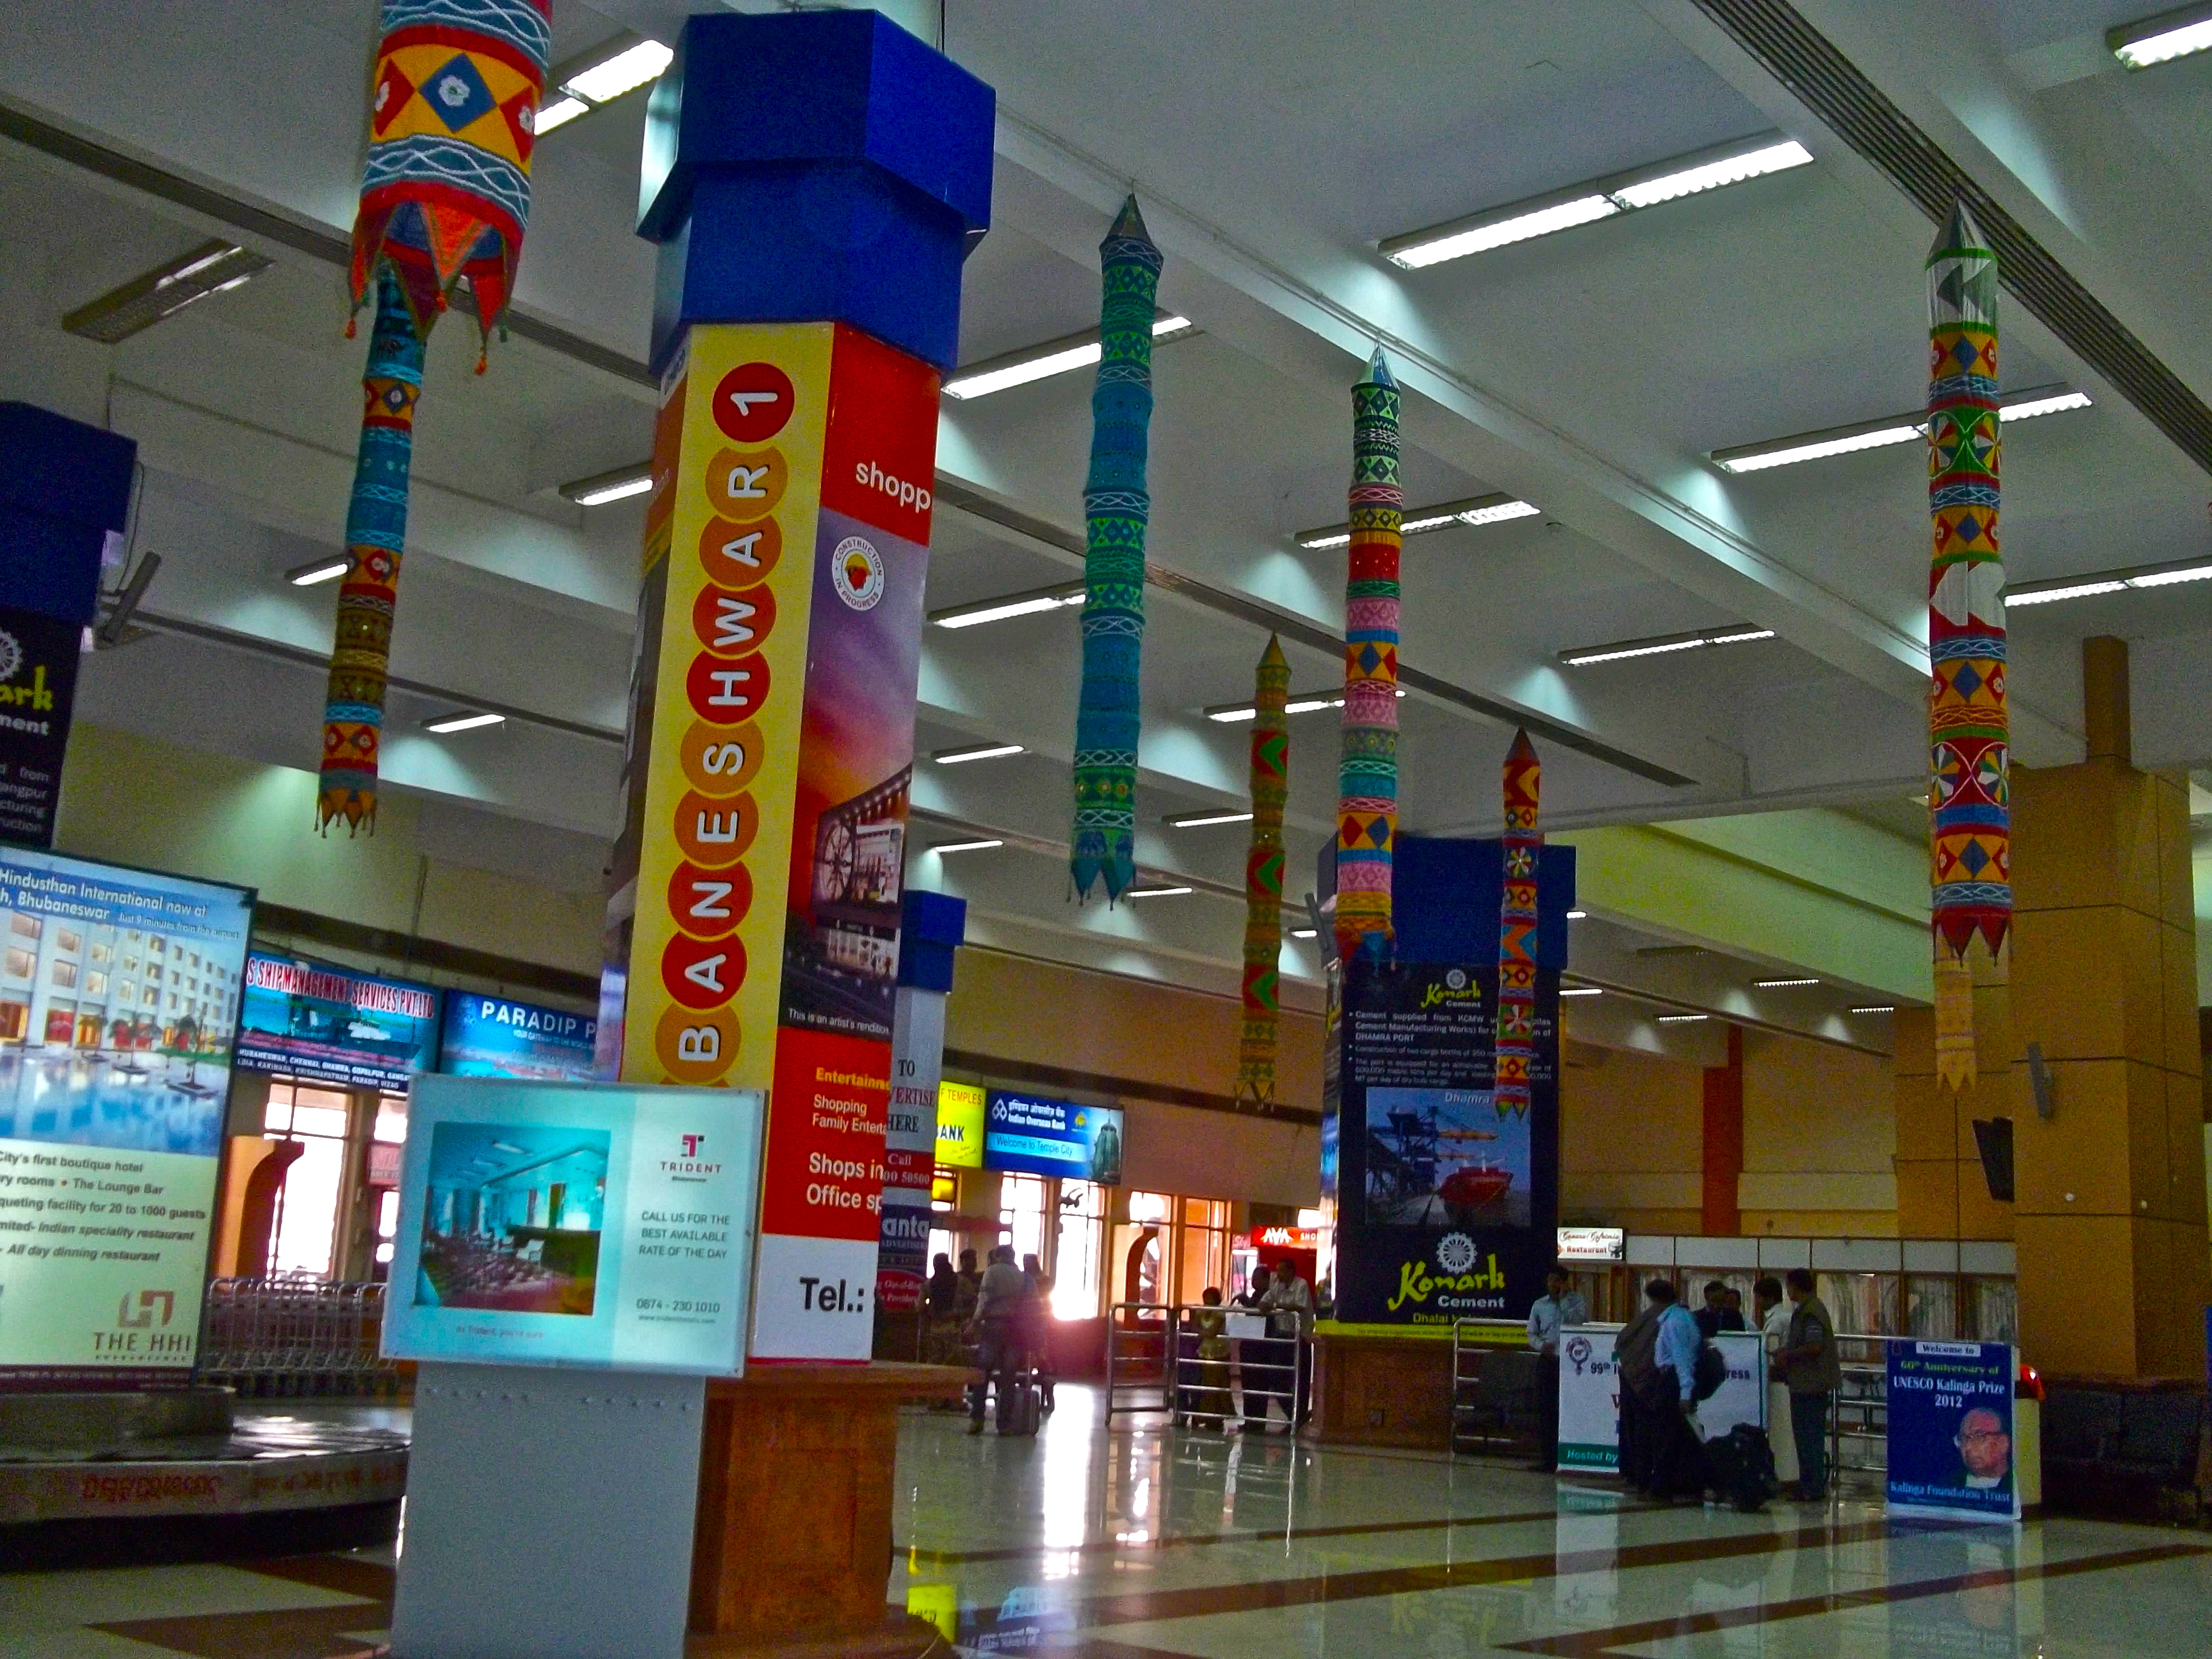 Biju Patnaik Airport serves the Indian city of Bhubaneswar.